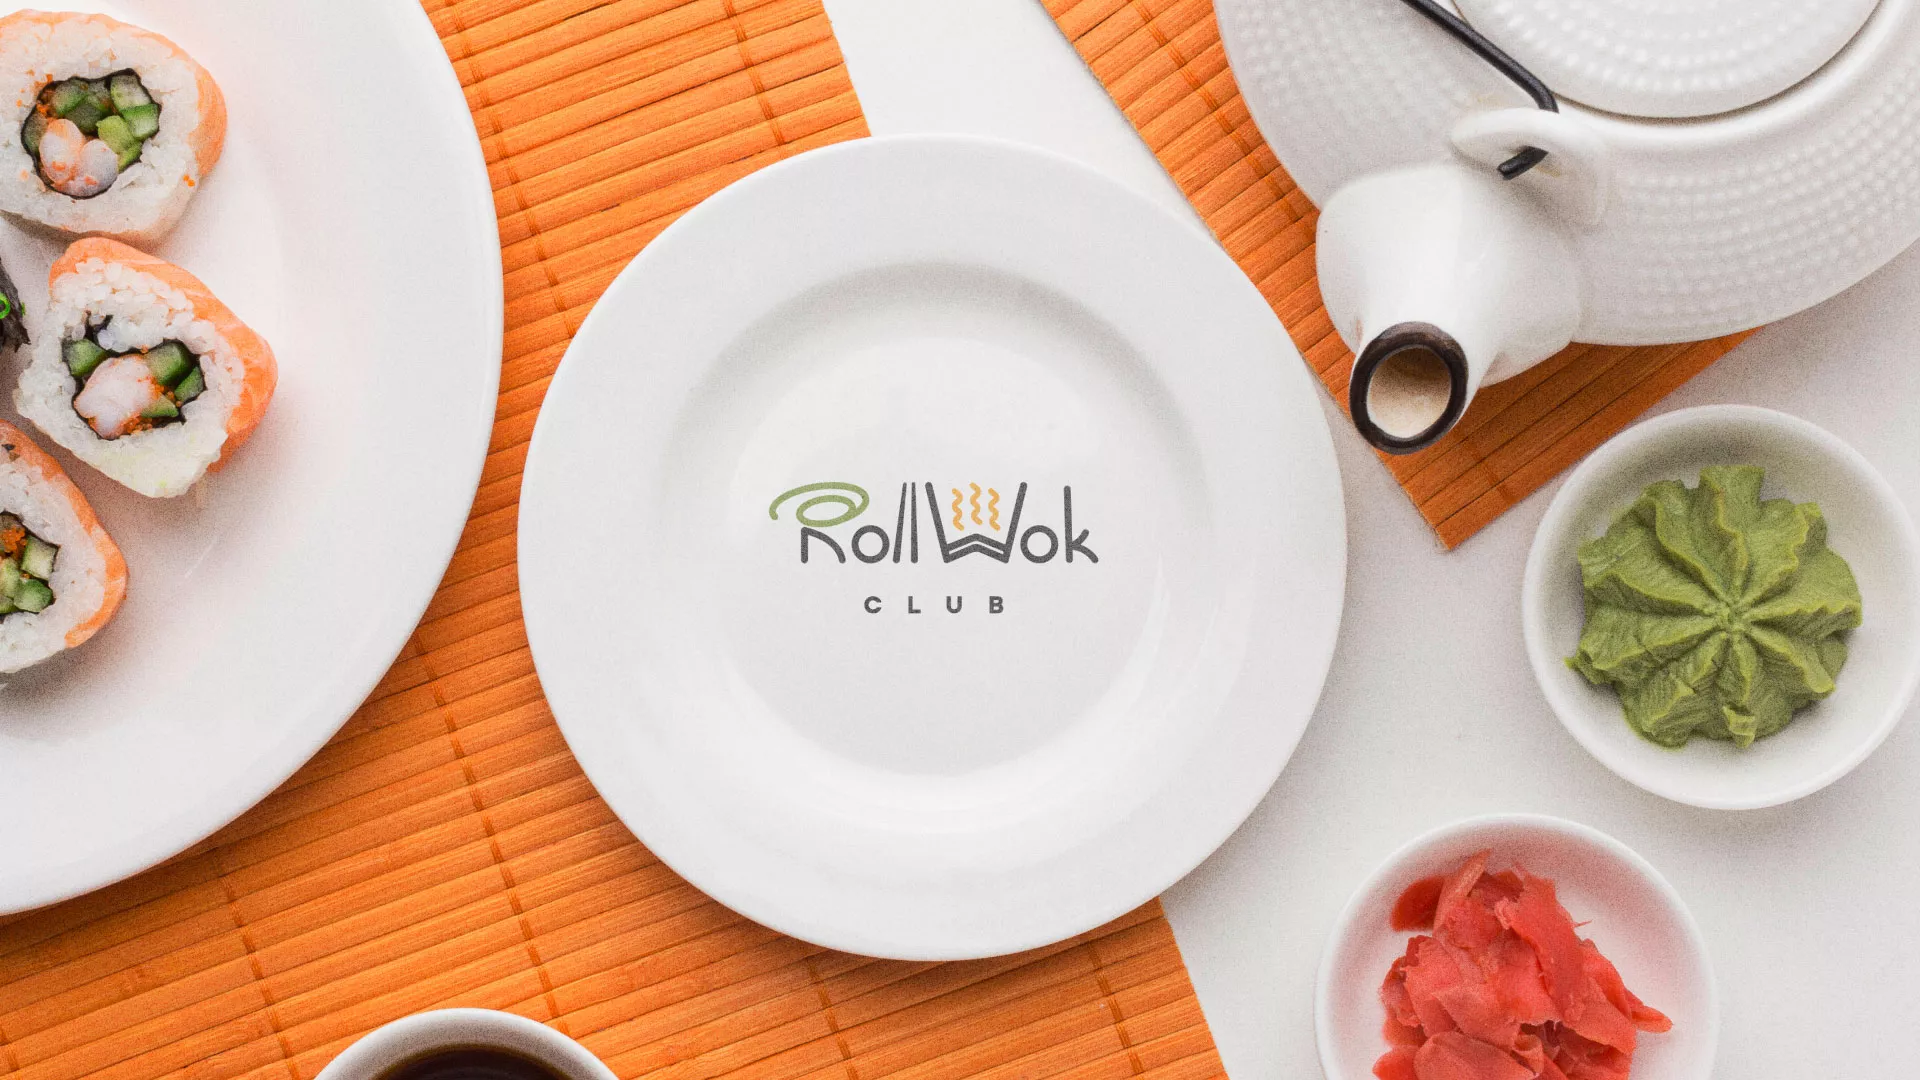 Разработка логотипа и фирменного стиля суши-бара «Roll Wok Club» в Домодедово